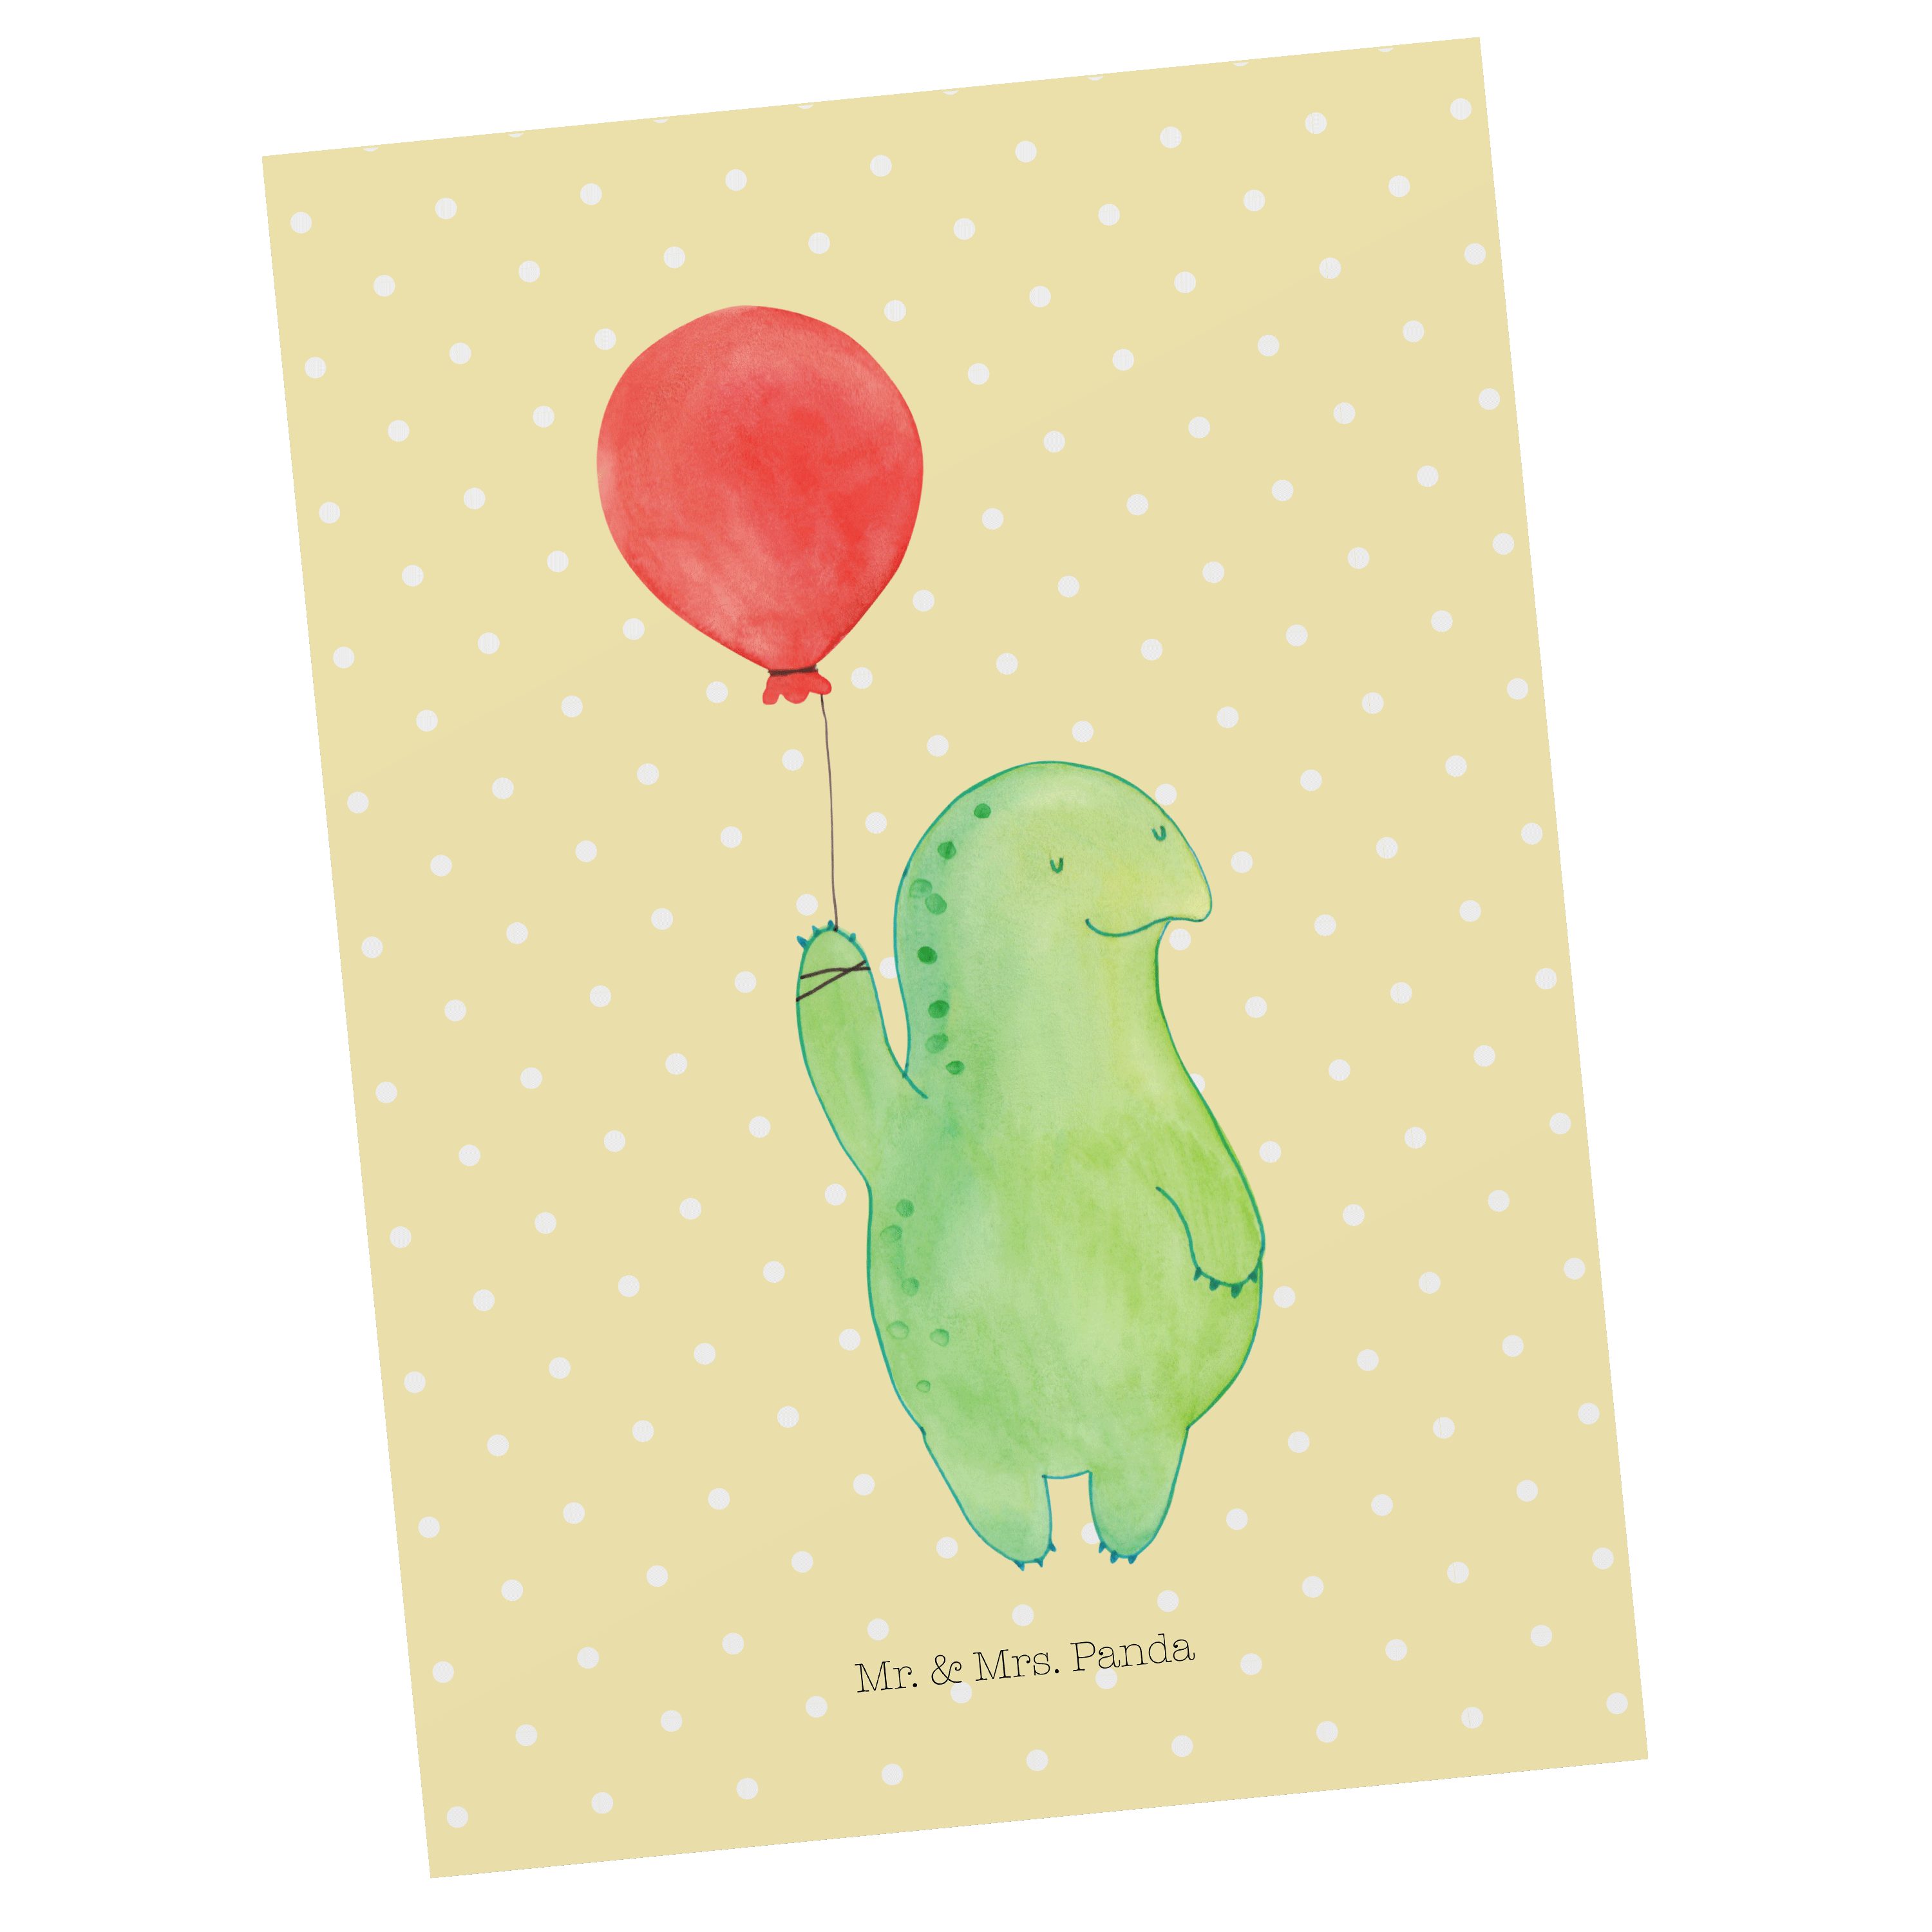 Mr. & Mrs. Panda Postkarte Schildkröte Luftballon - Gelb Pastell - Geschenk, glücklich, Motivati